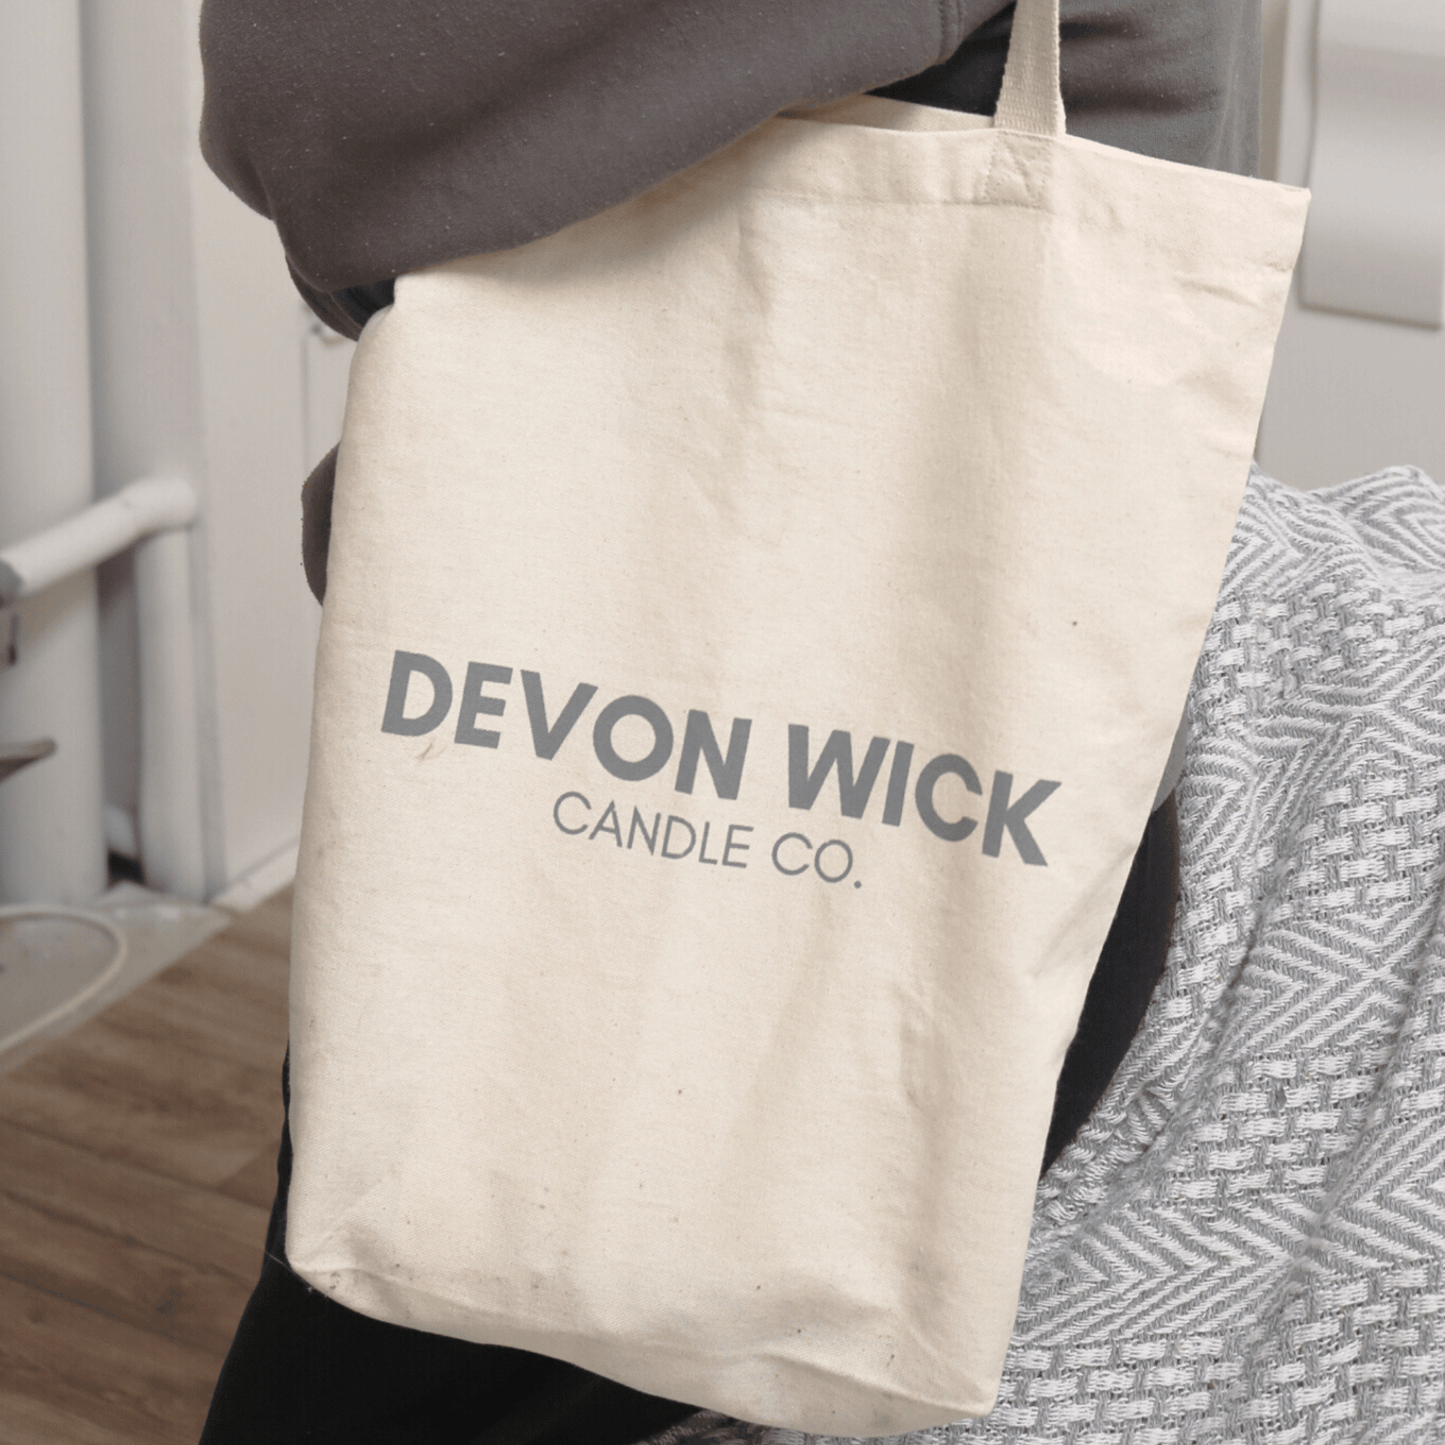 Devon Wick Candle Co. Limited Devon Wick Canvas Tote Bag